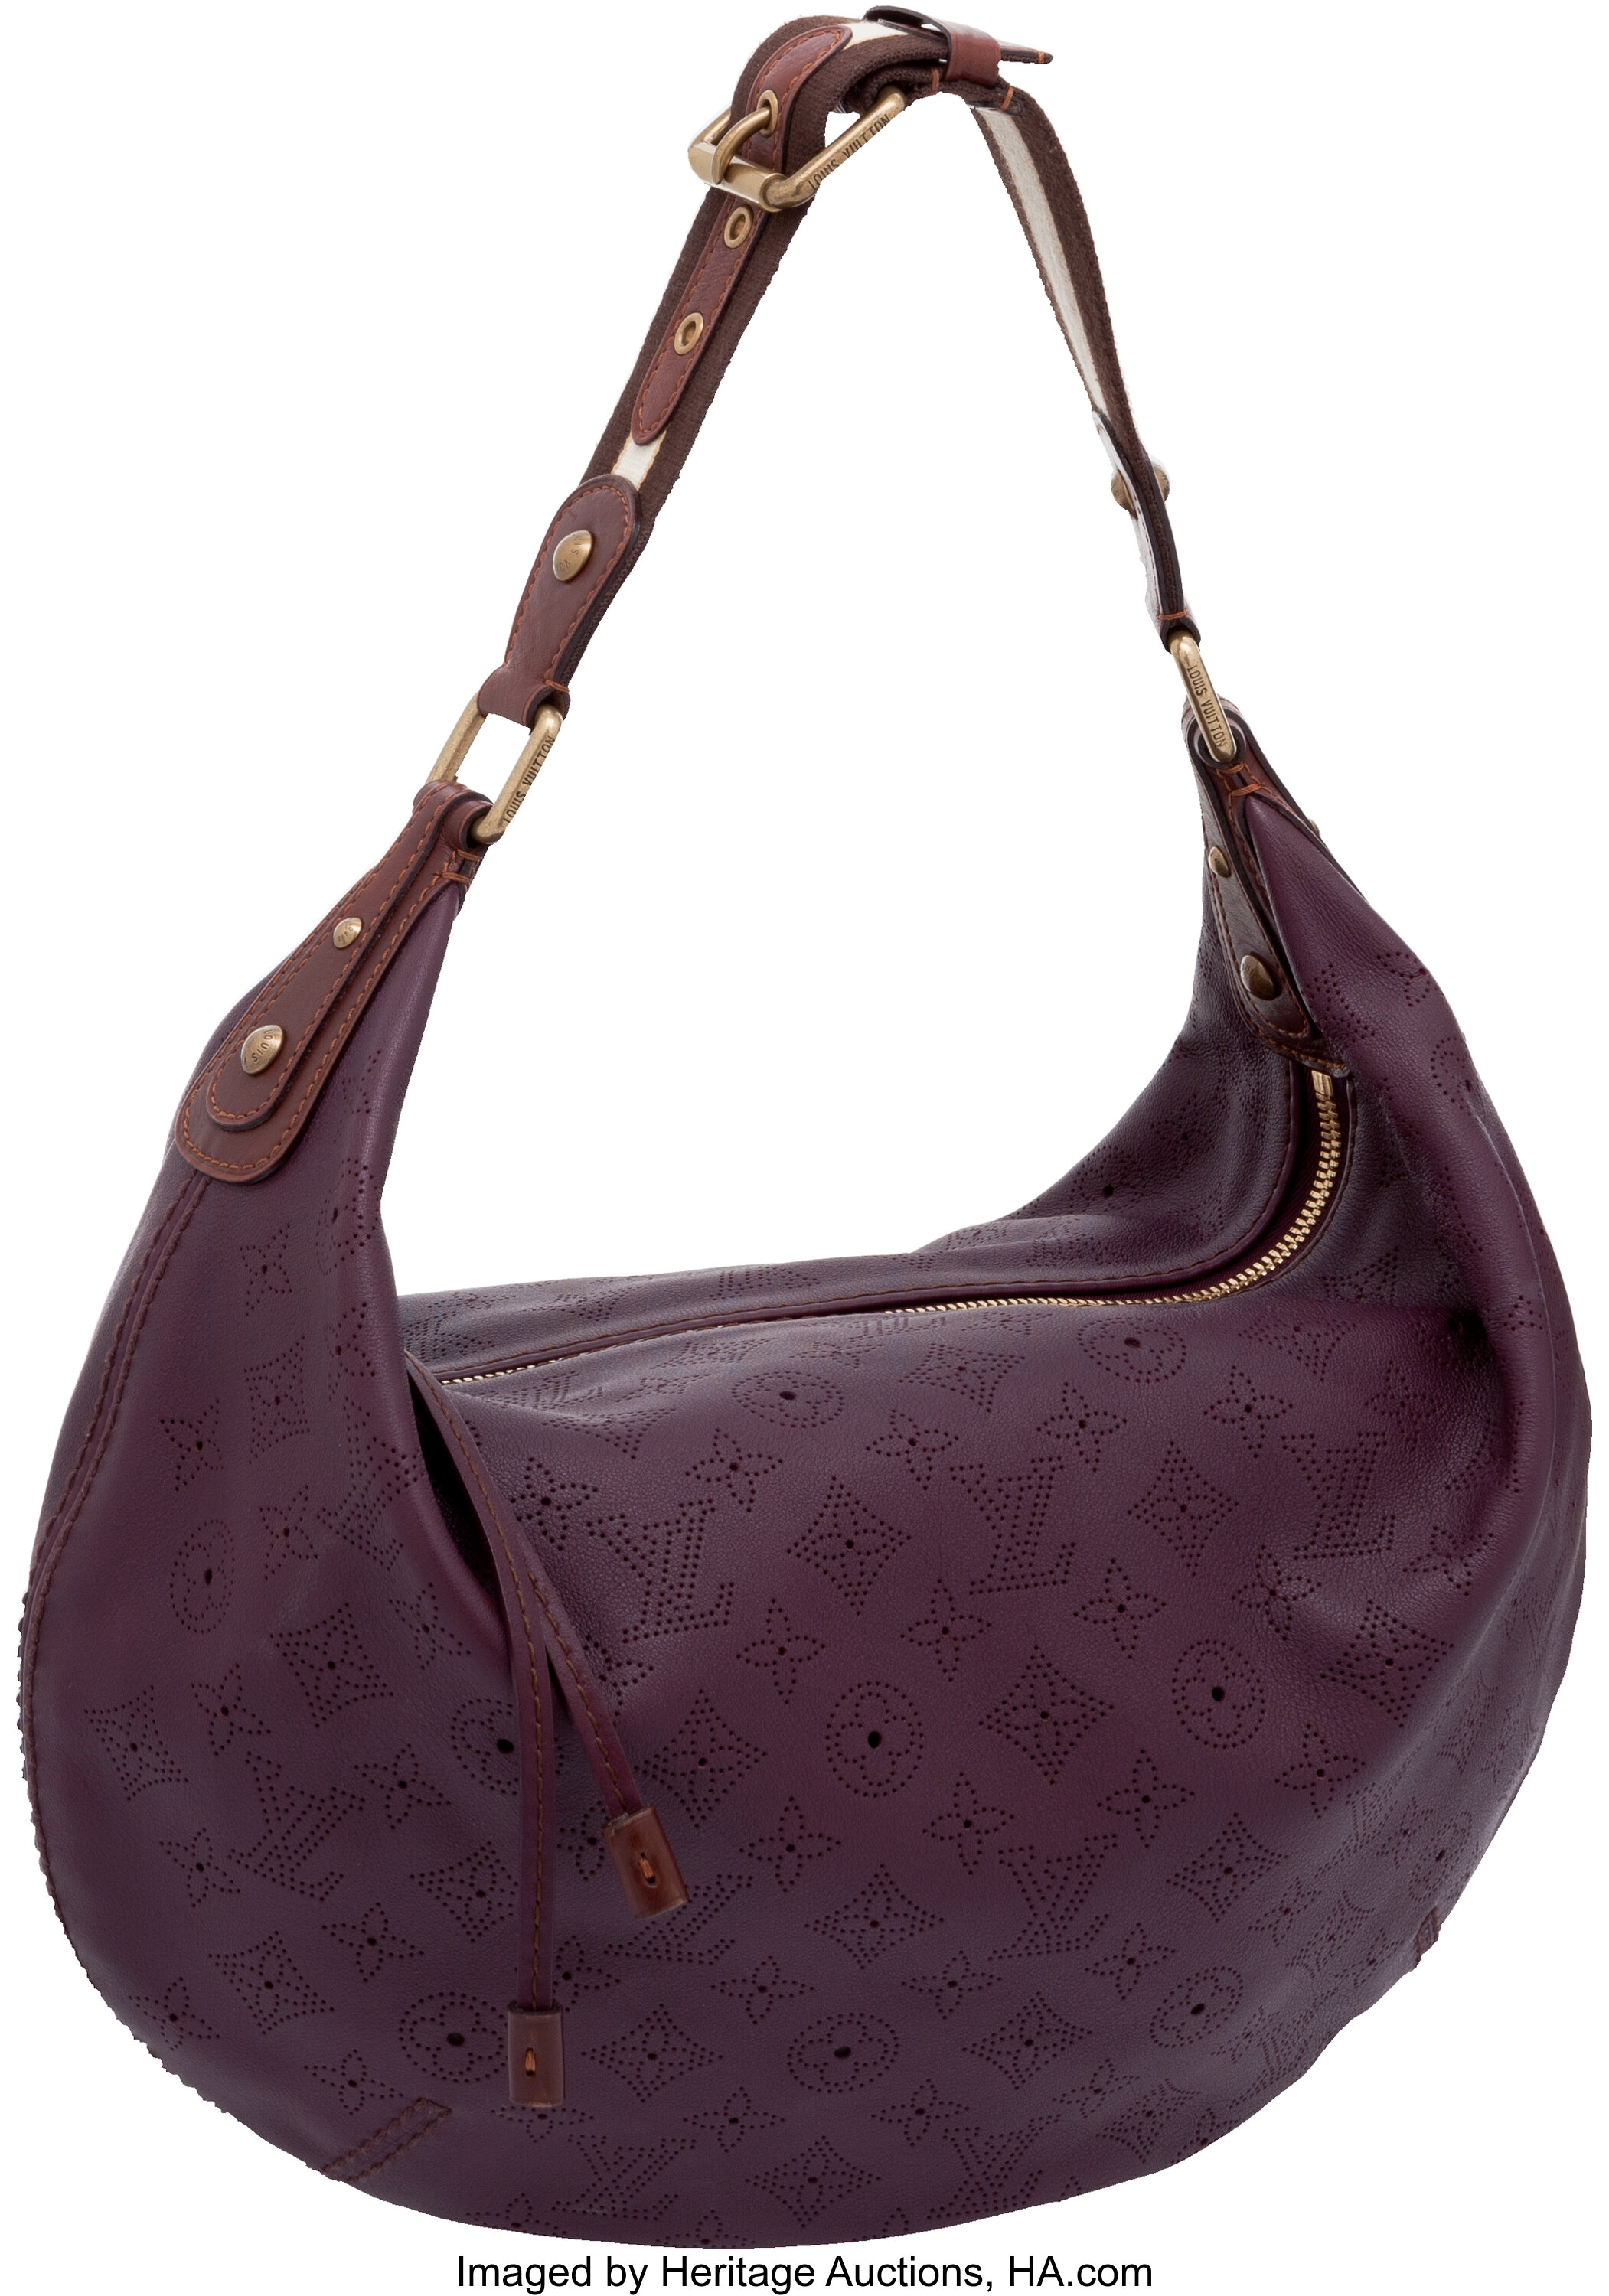 Louis Vuitton Empreinte Fascinante Bag - Neutrals Crossbody Bags